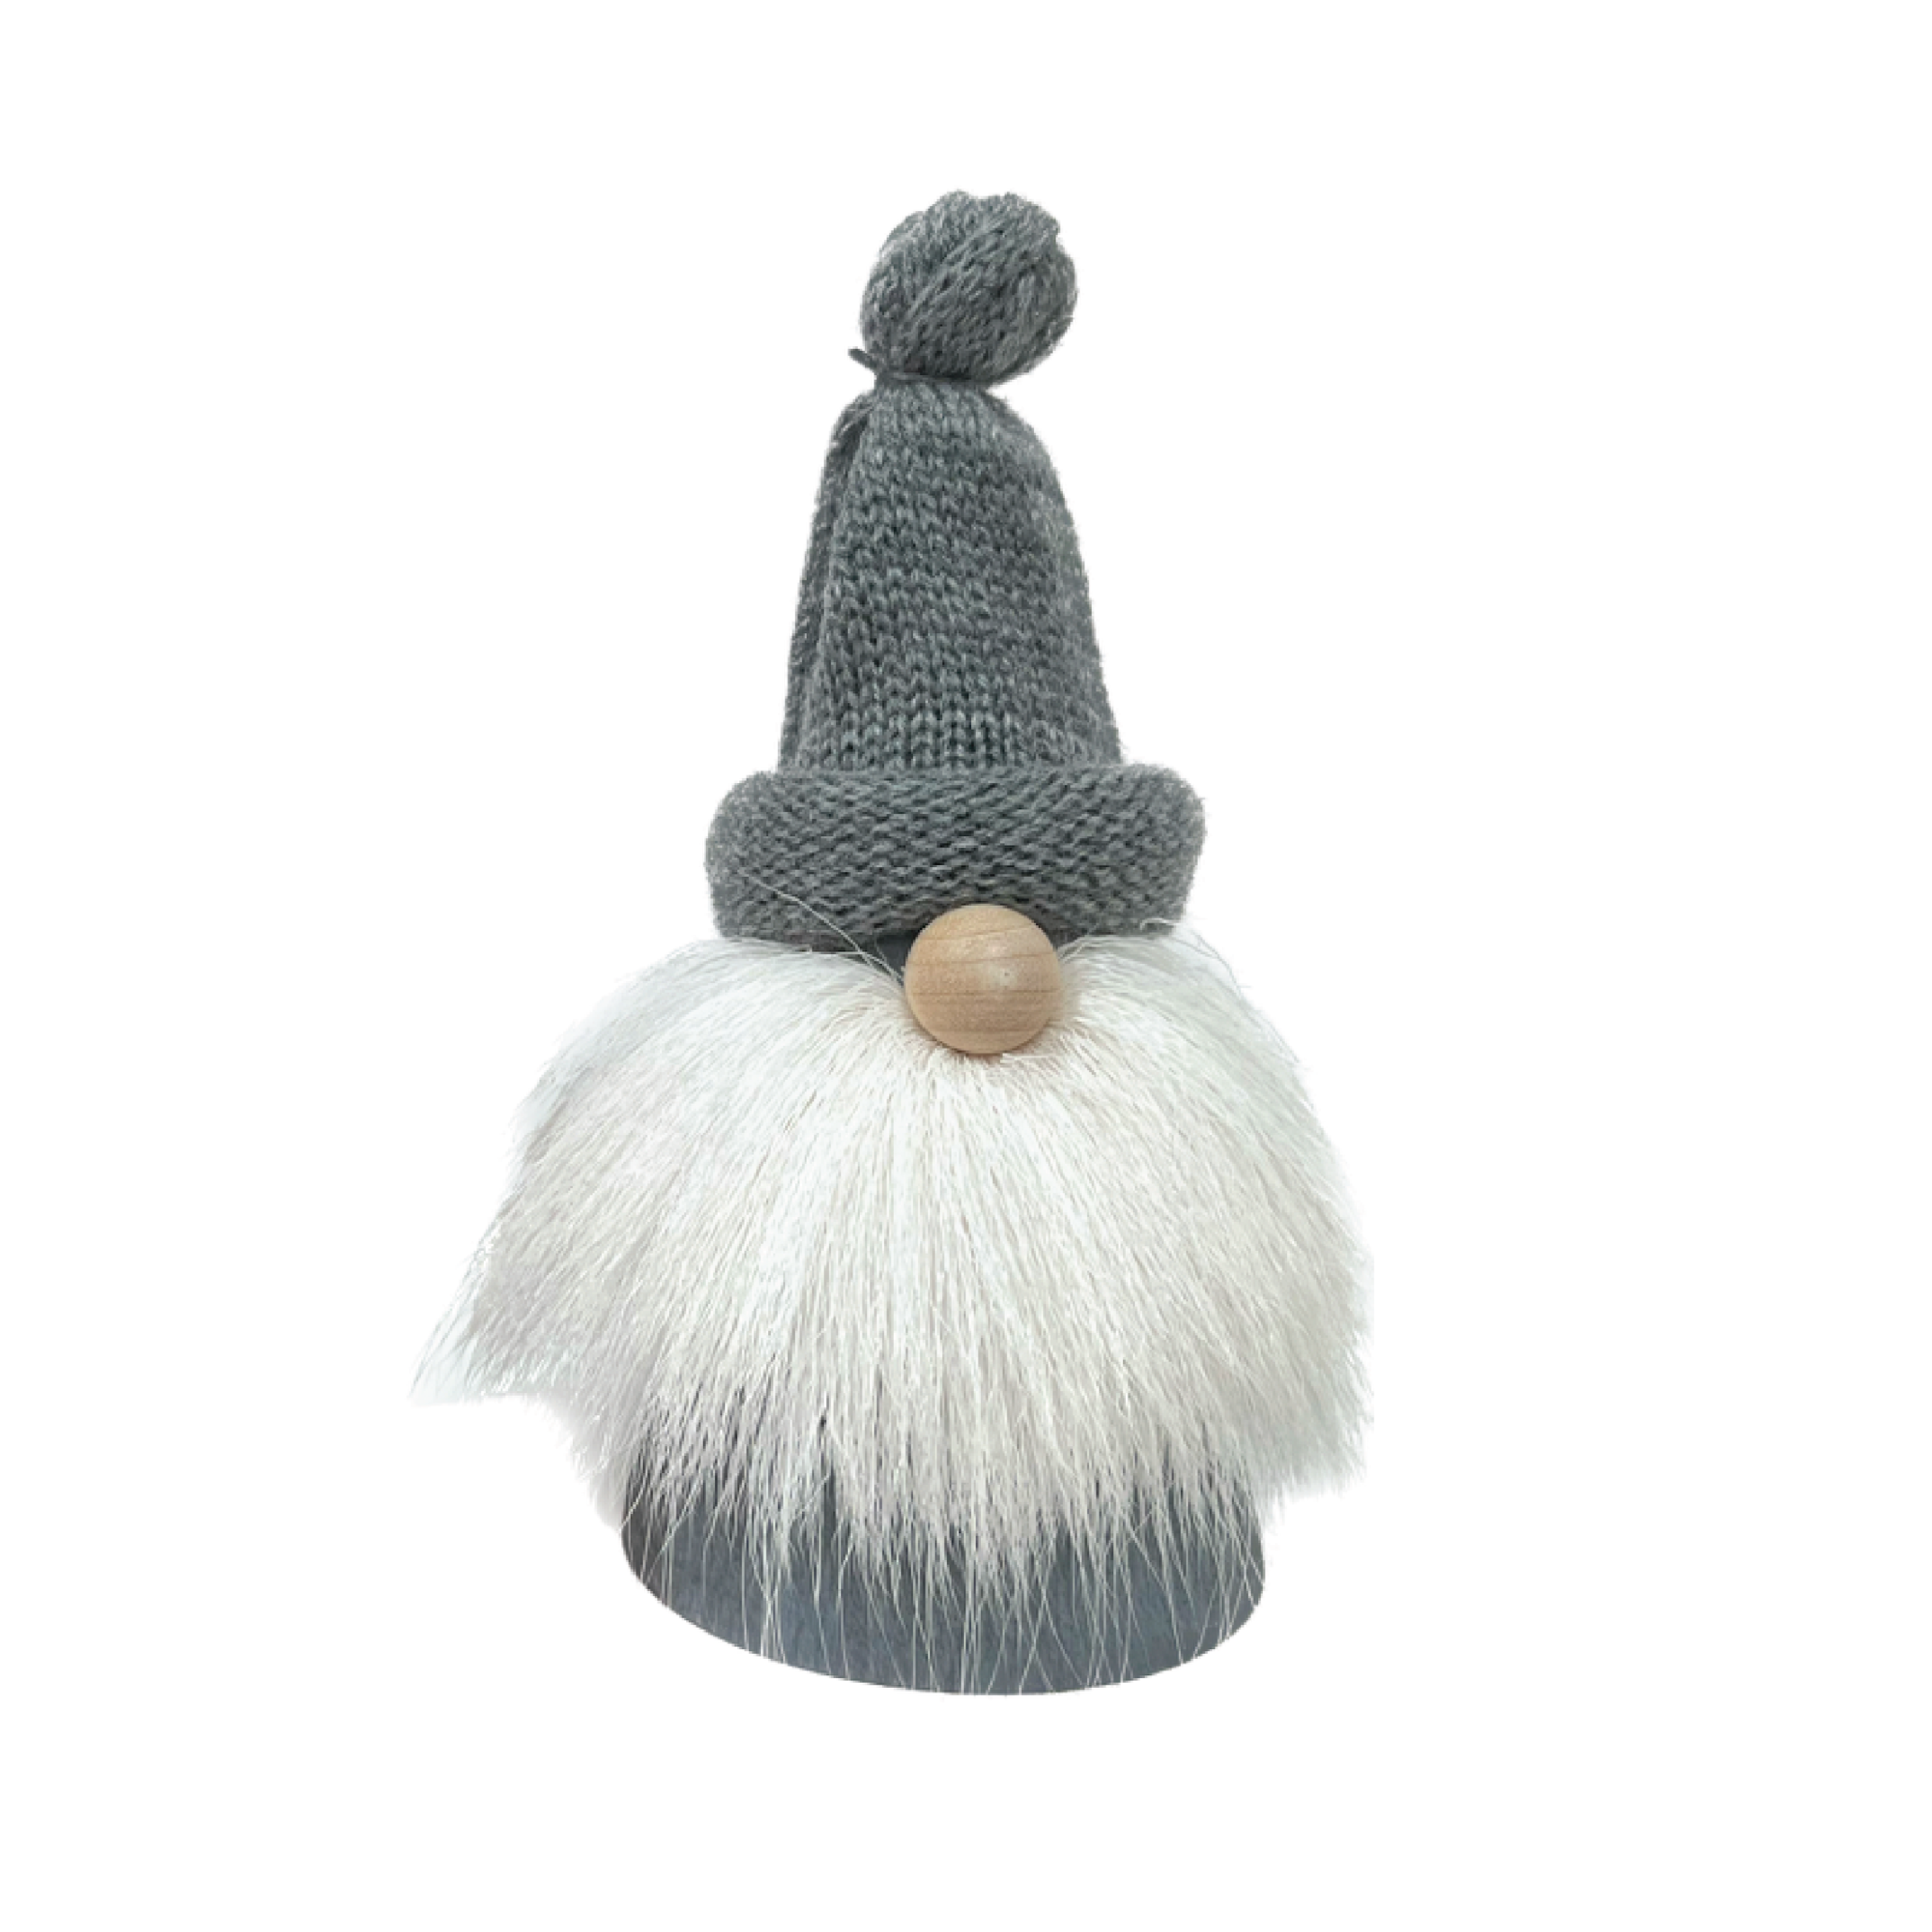 Tomte - Pom Pom Hat with Reindeer Beard